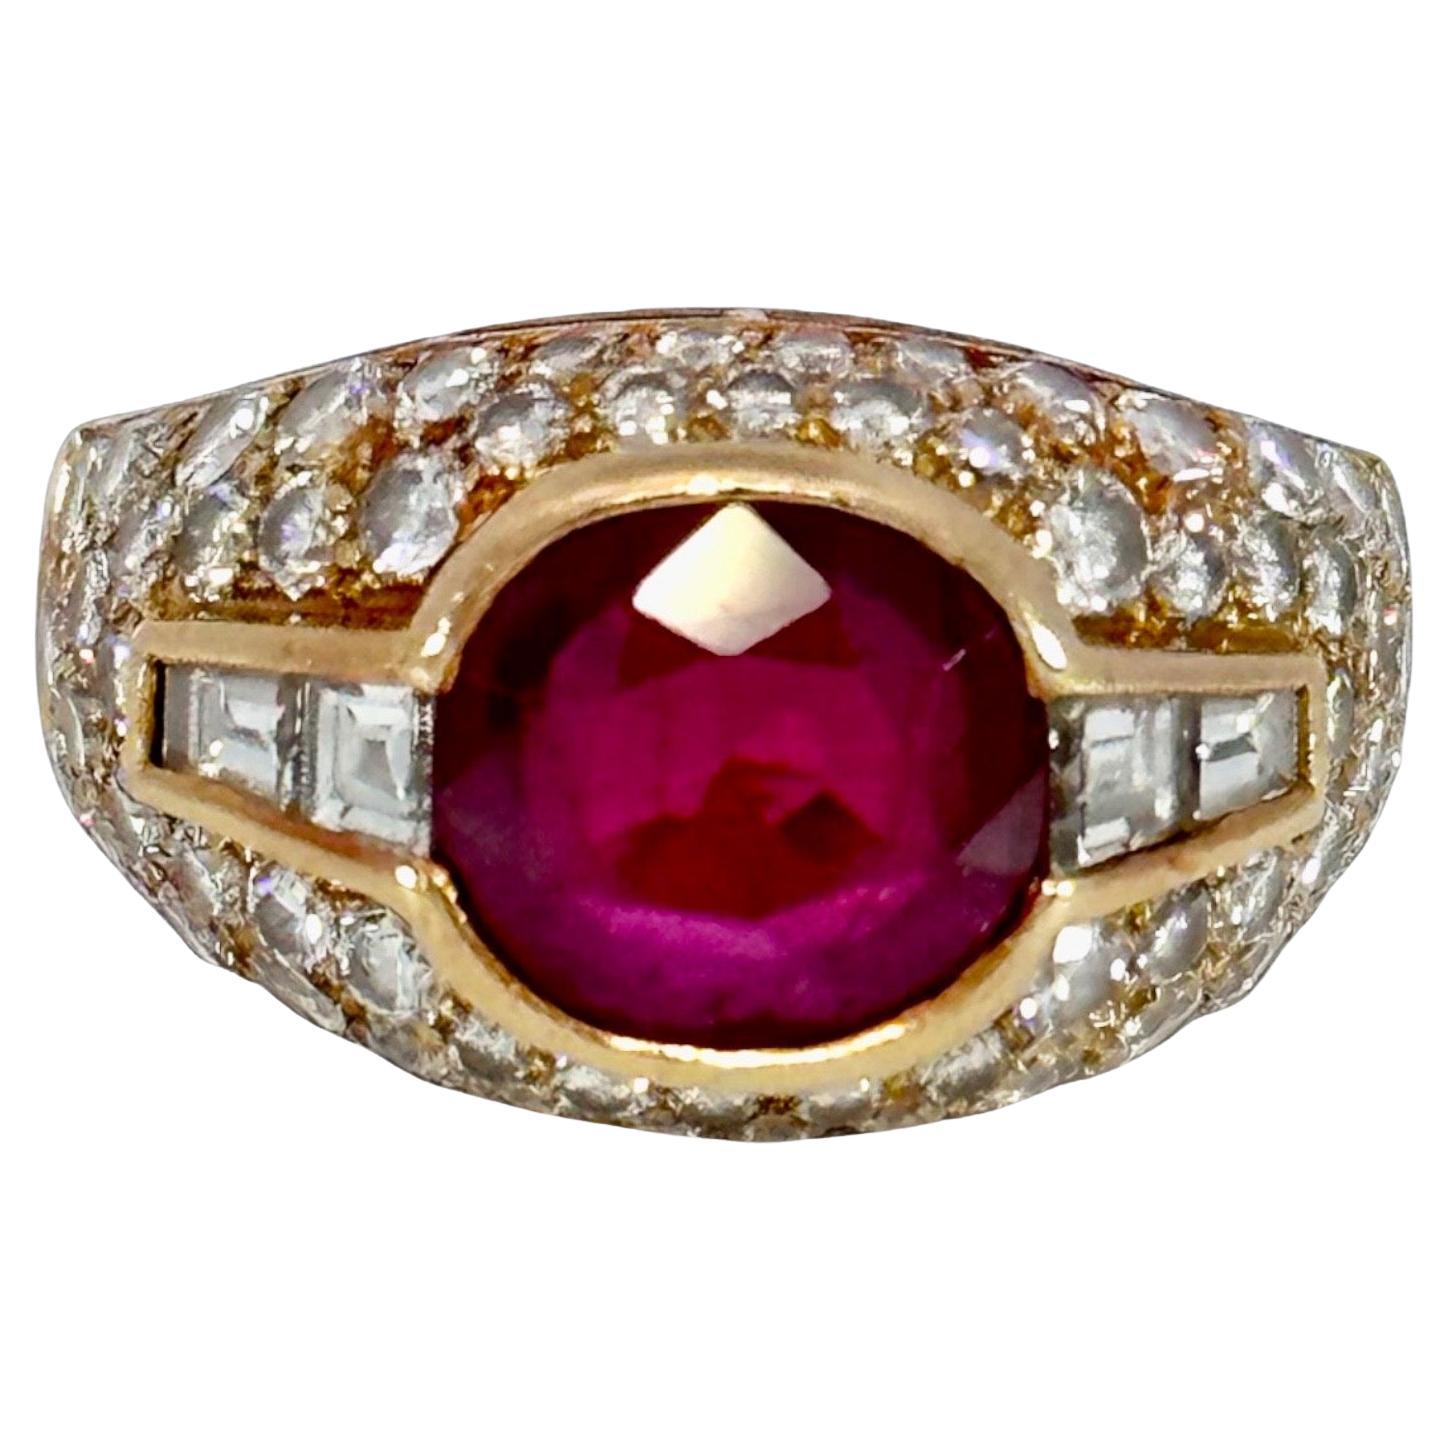 Bvlgari Trombino 18kt Gelbgold Ring 2,09 Karat Rubin & Diamanten mit GRS-zertifiziertem Ring